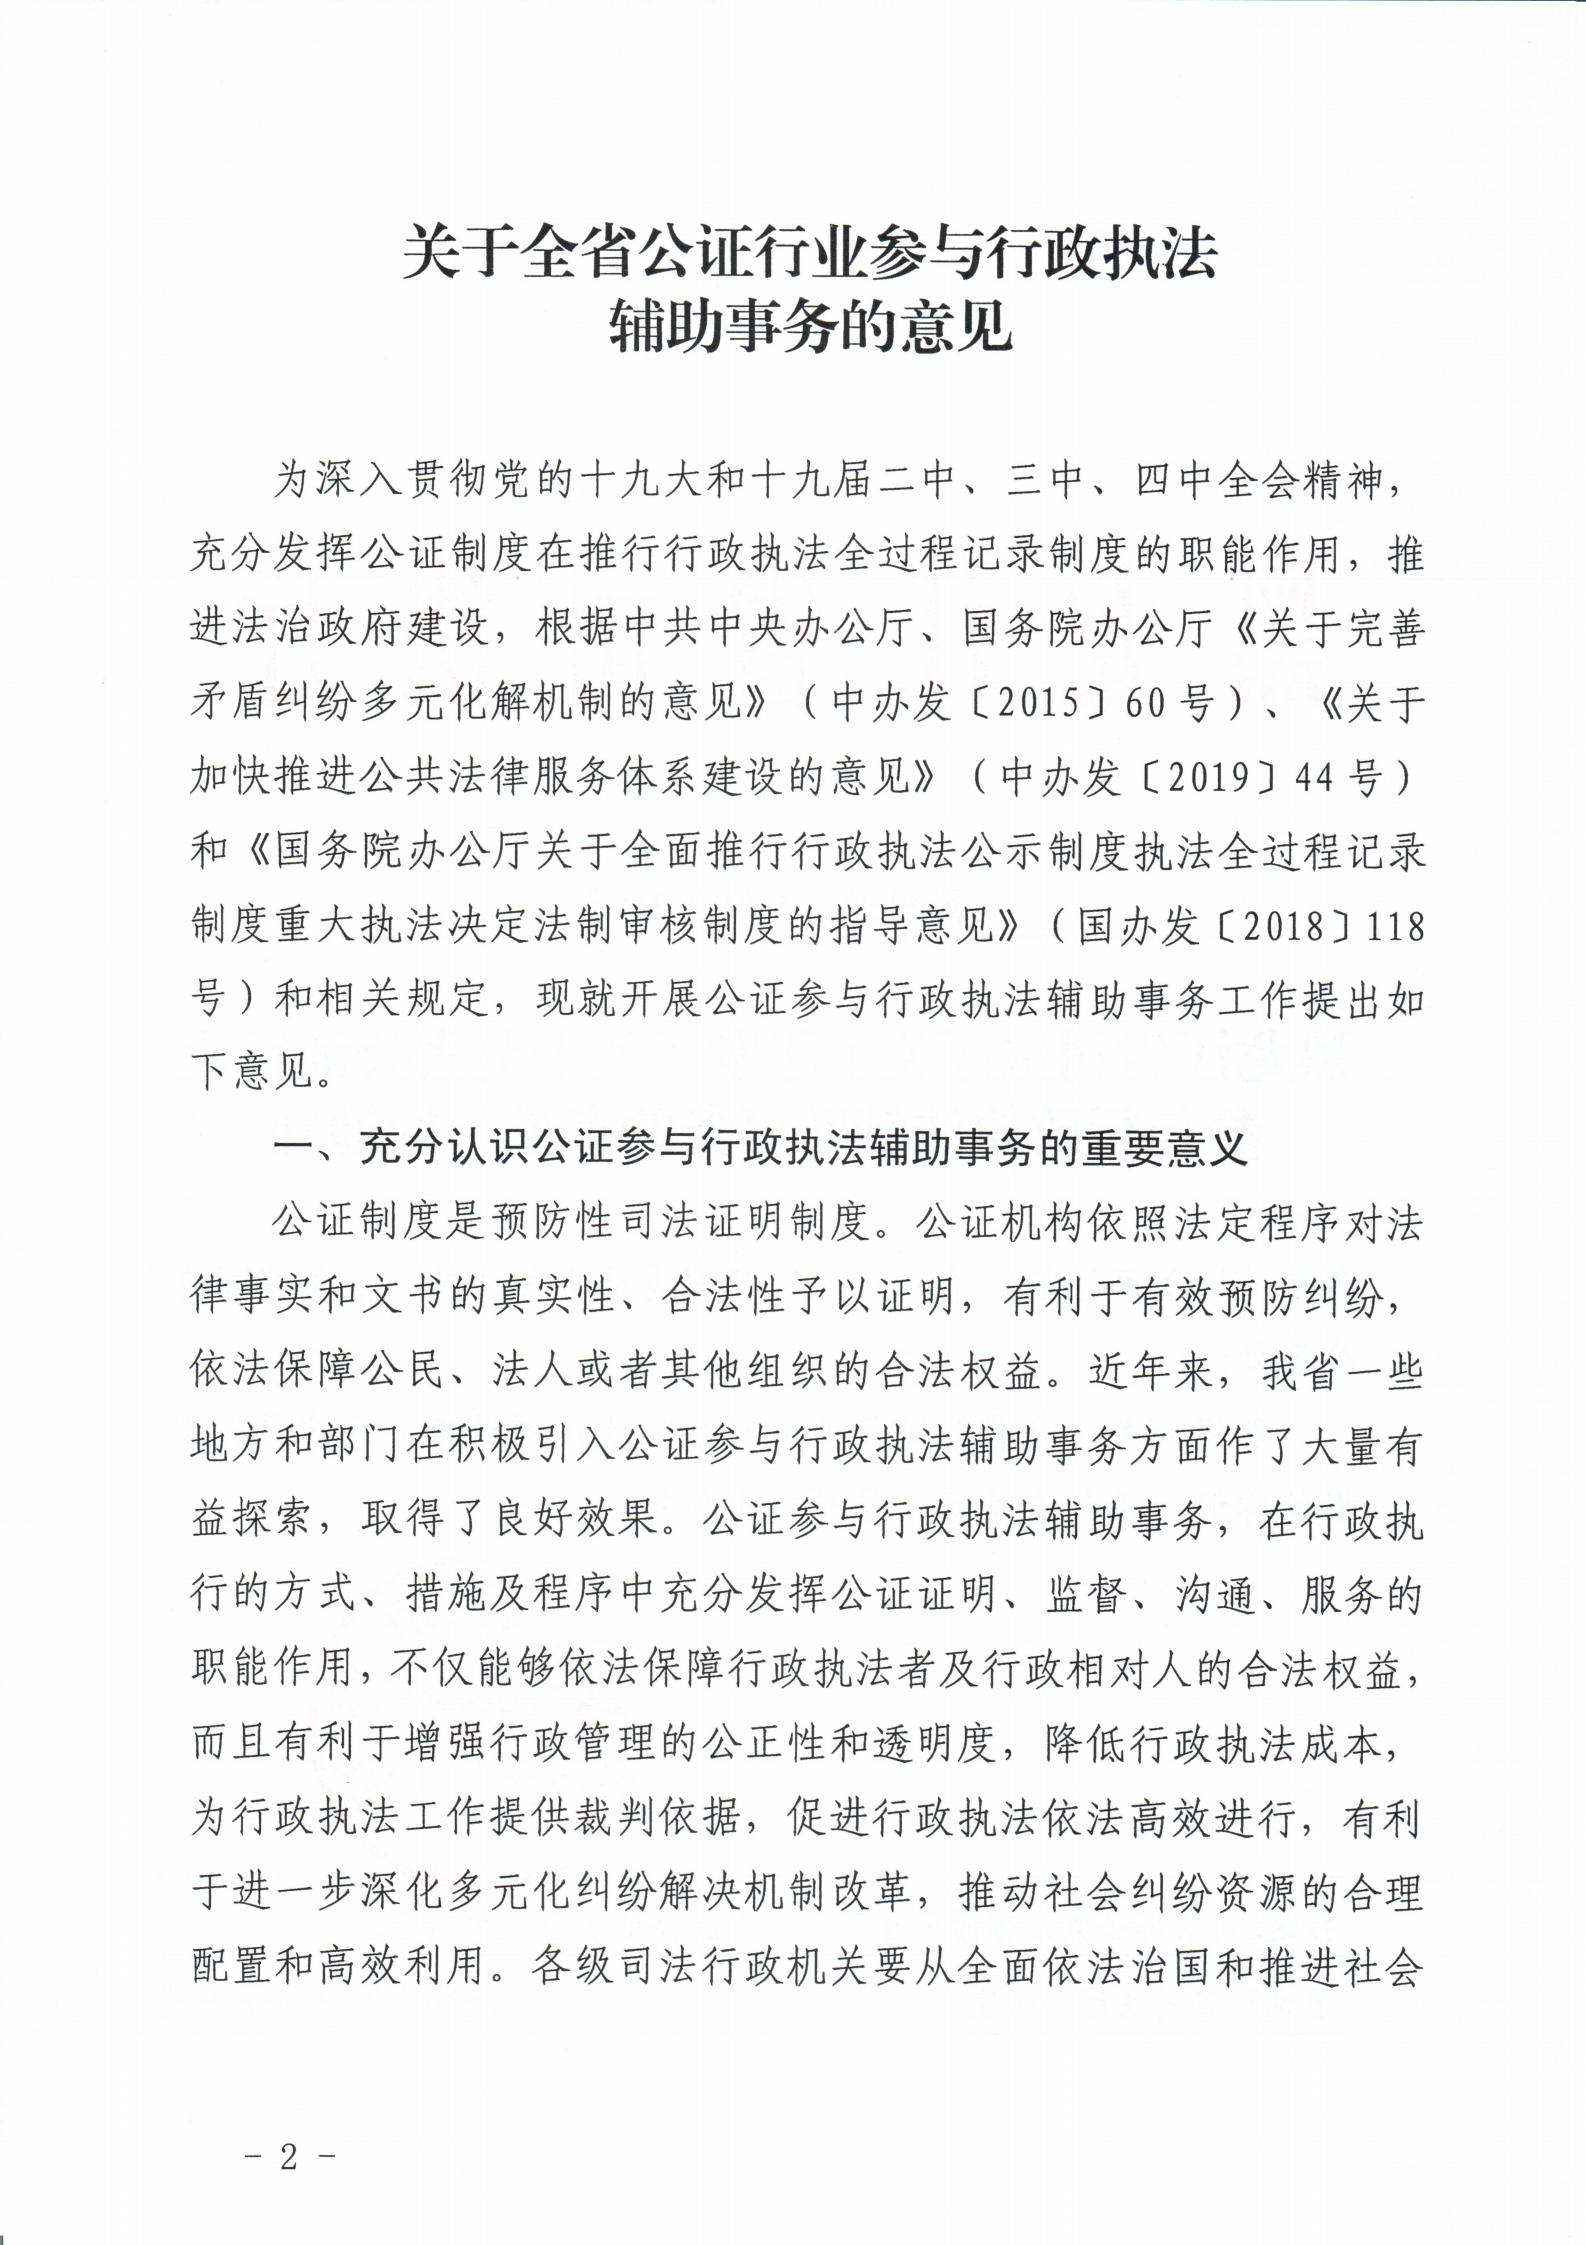 黑龙江省司法厅关于印发《关于全省公证行业参与行政执法辅助事务的意见》的通知